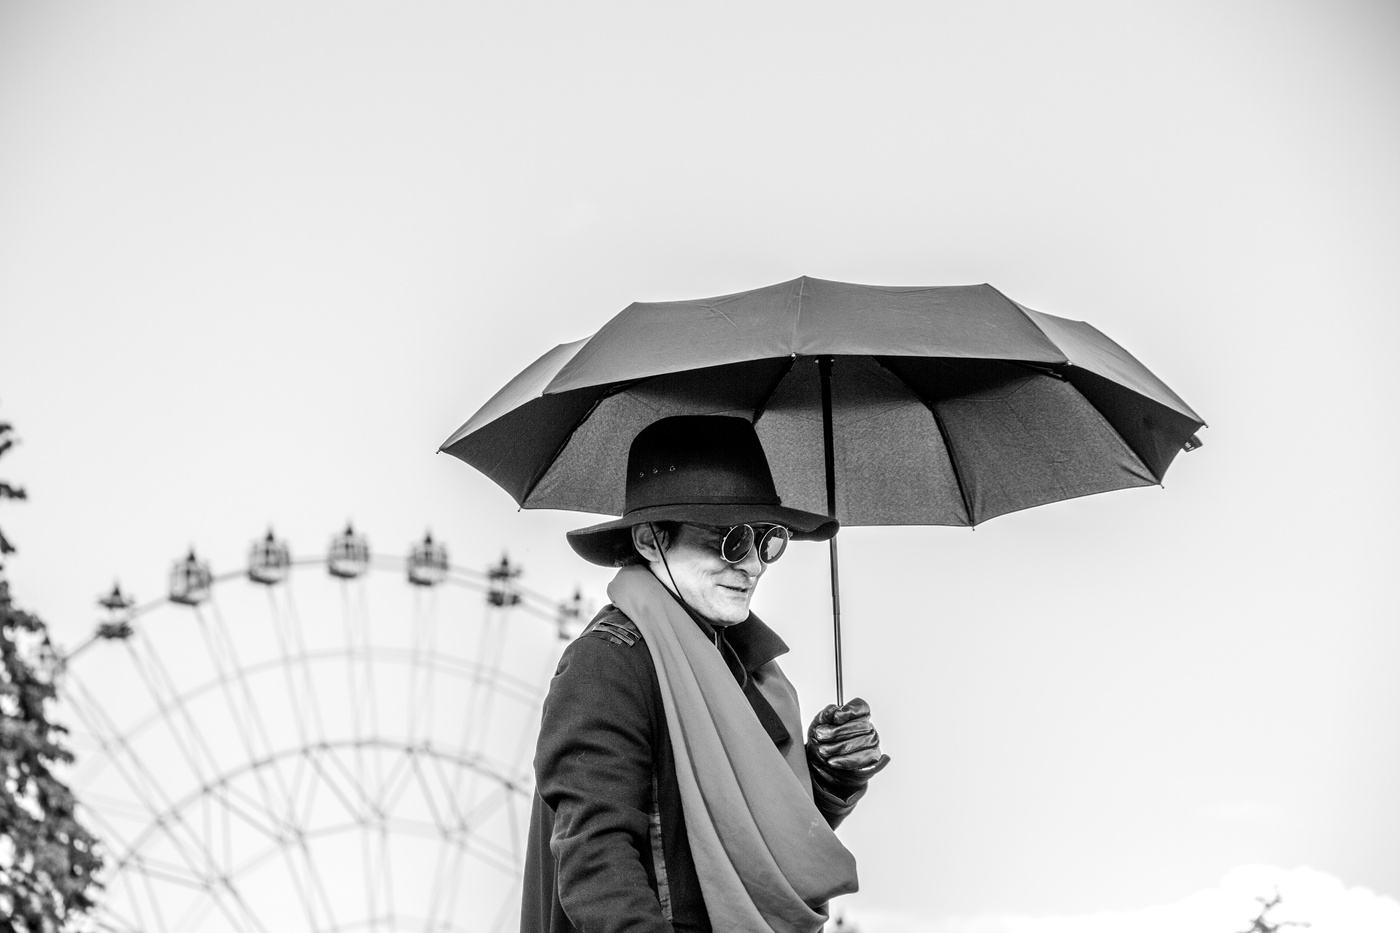 Одолжил ей зонтик. Человек с зонтом. Мужчина с зонтом. Человек под зонтом. Девушка с зонтом.